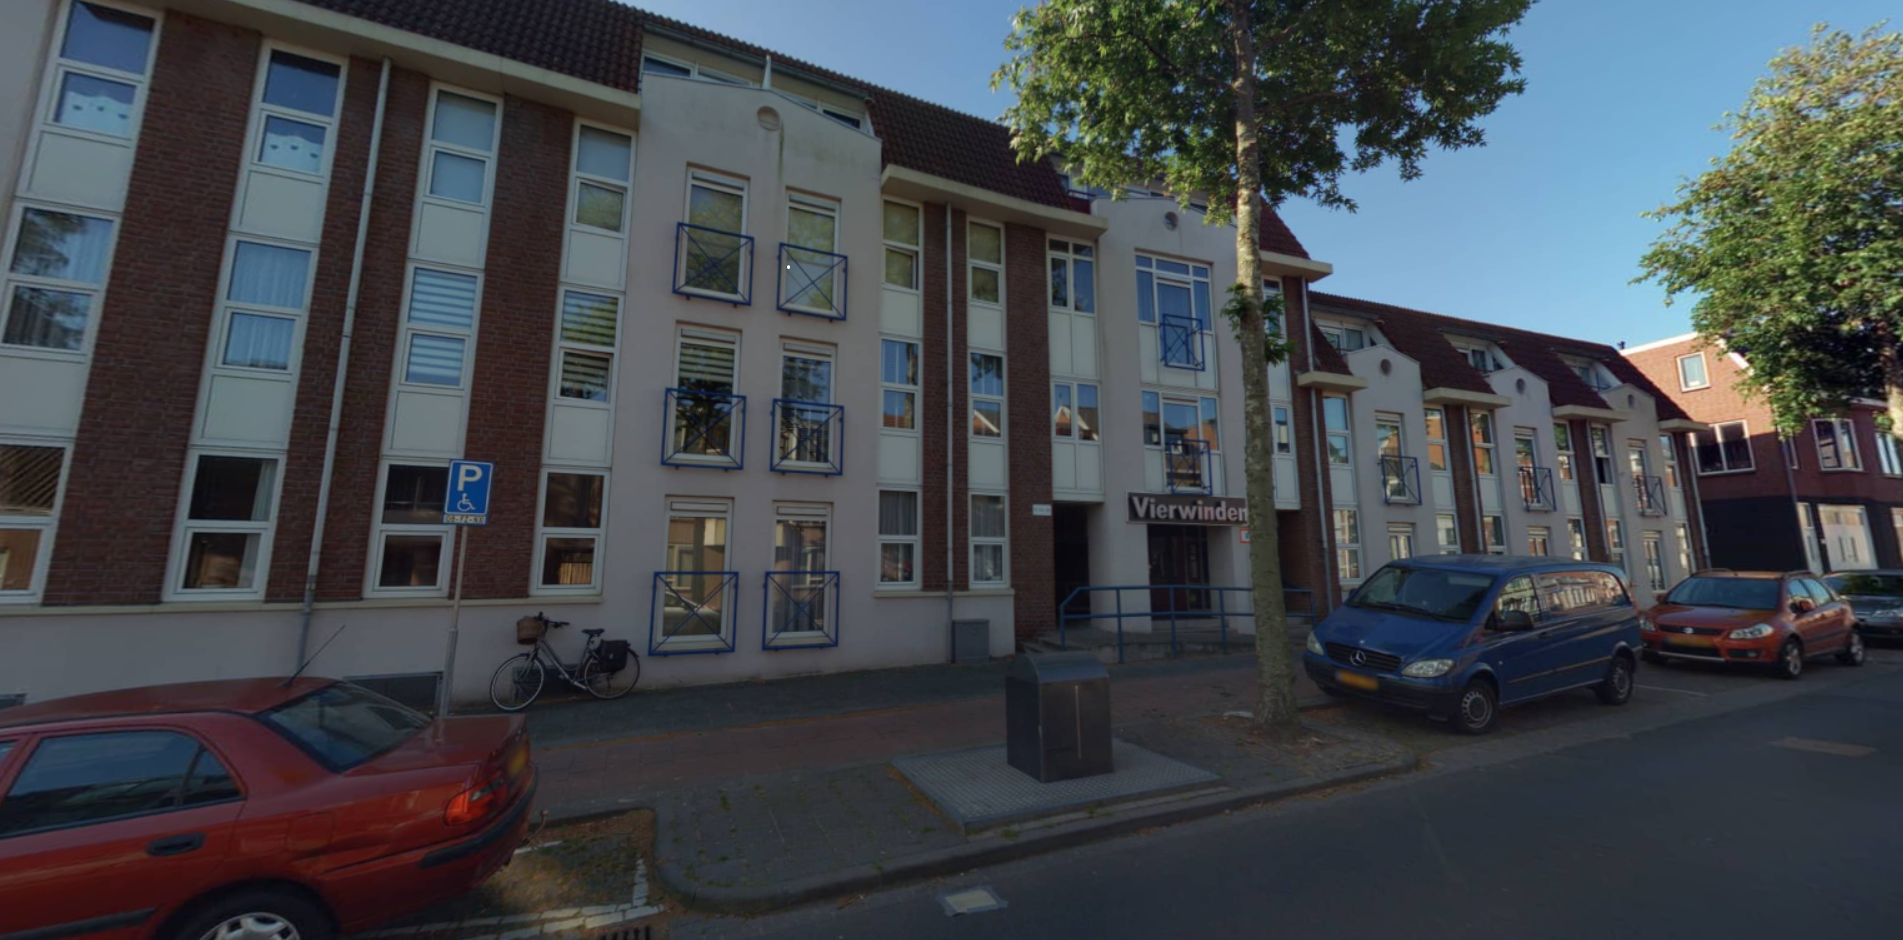 Van Dedemstraat 27, 4611 BD Bergen op Zoom, Nederland